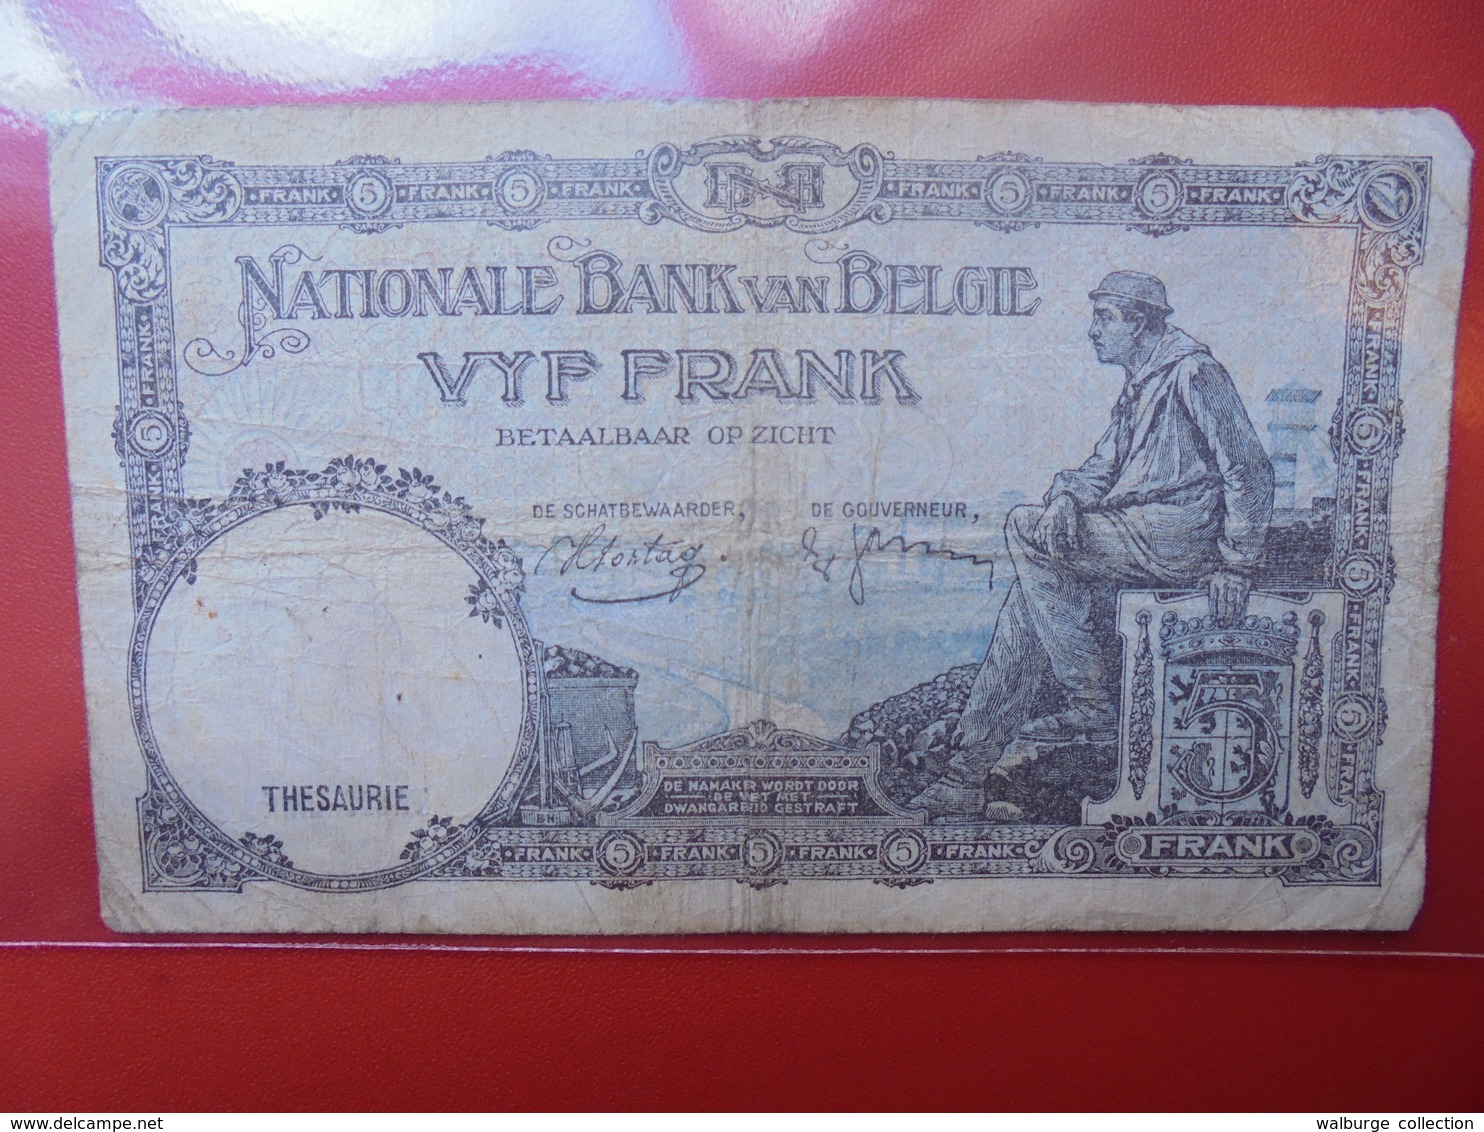 BELGIQUE 5 FRANCS 1938 CIRCULER (B.1) - 5 Francs